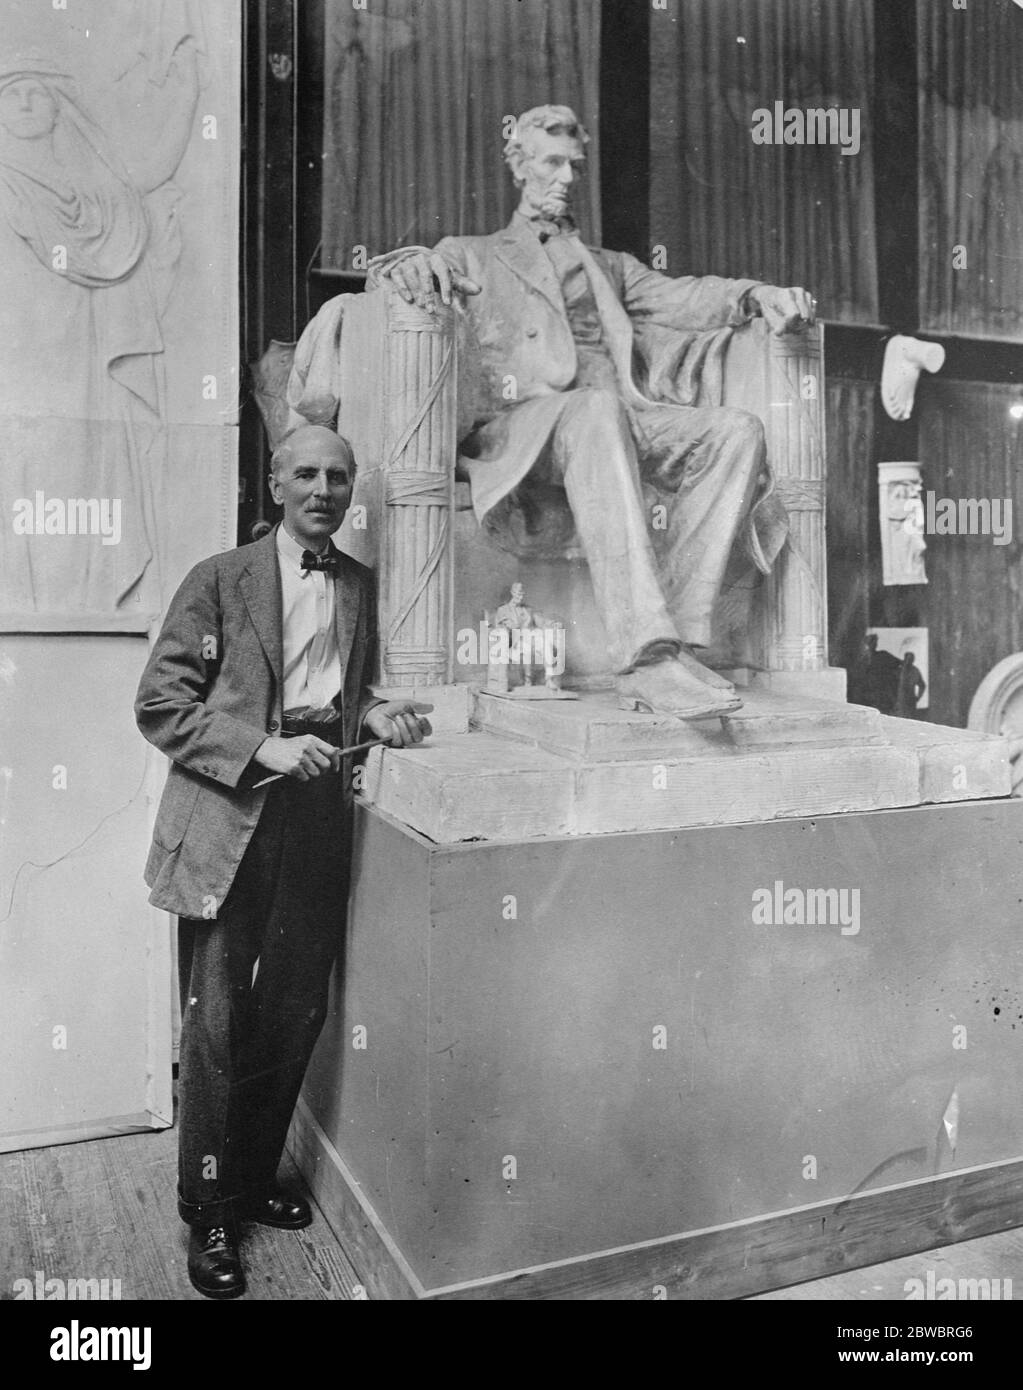 Bildhauer und seine berühmteste Statue Herr Daniel Chester Französisch, Amerika ' s führenden Bildhauer, mit einem Modell seiner berühmtesten Statue, die Lincoln Memorial in Washington, D. C. Die Modelle werden in der Stockbridge ( Mass ) Kunstausstellung ausgestellt, die am Samstag, den 29. August 1925 eröffnet wurde Stockfoto